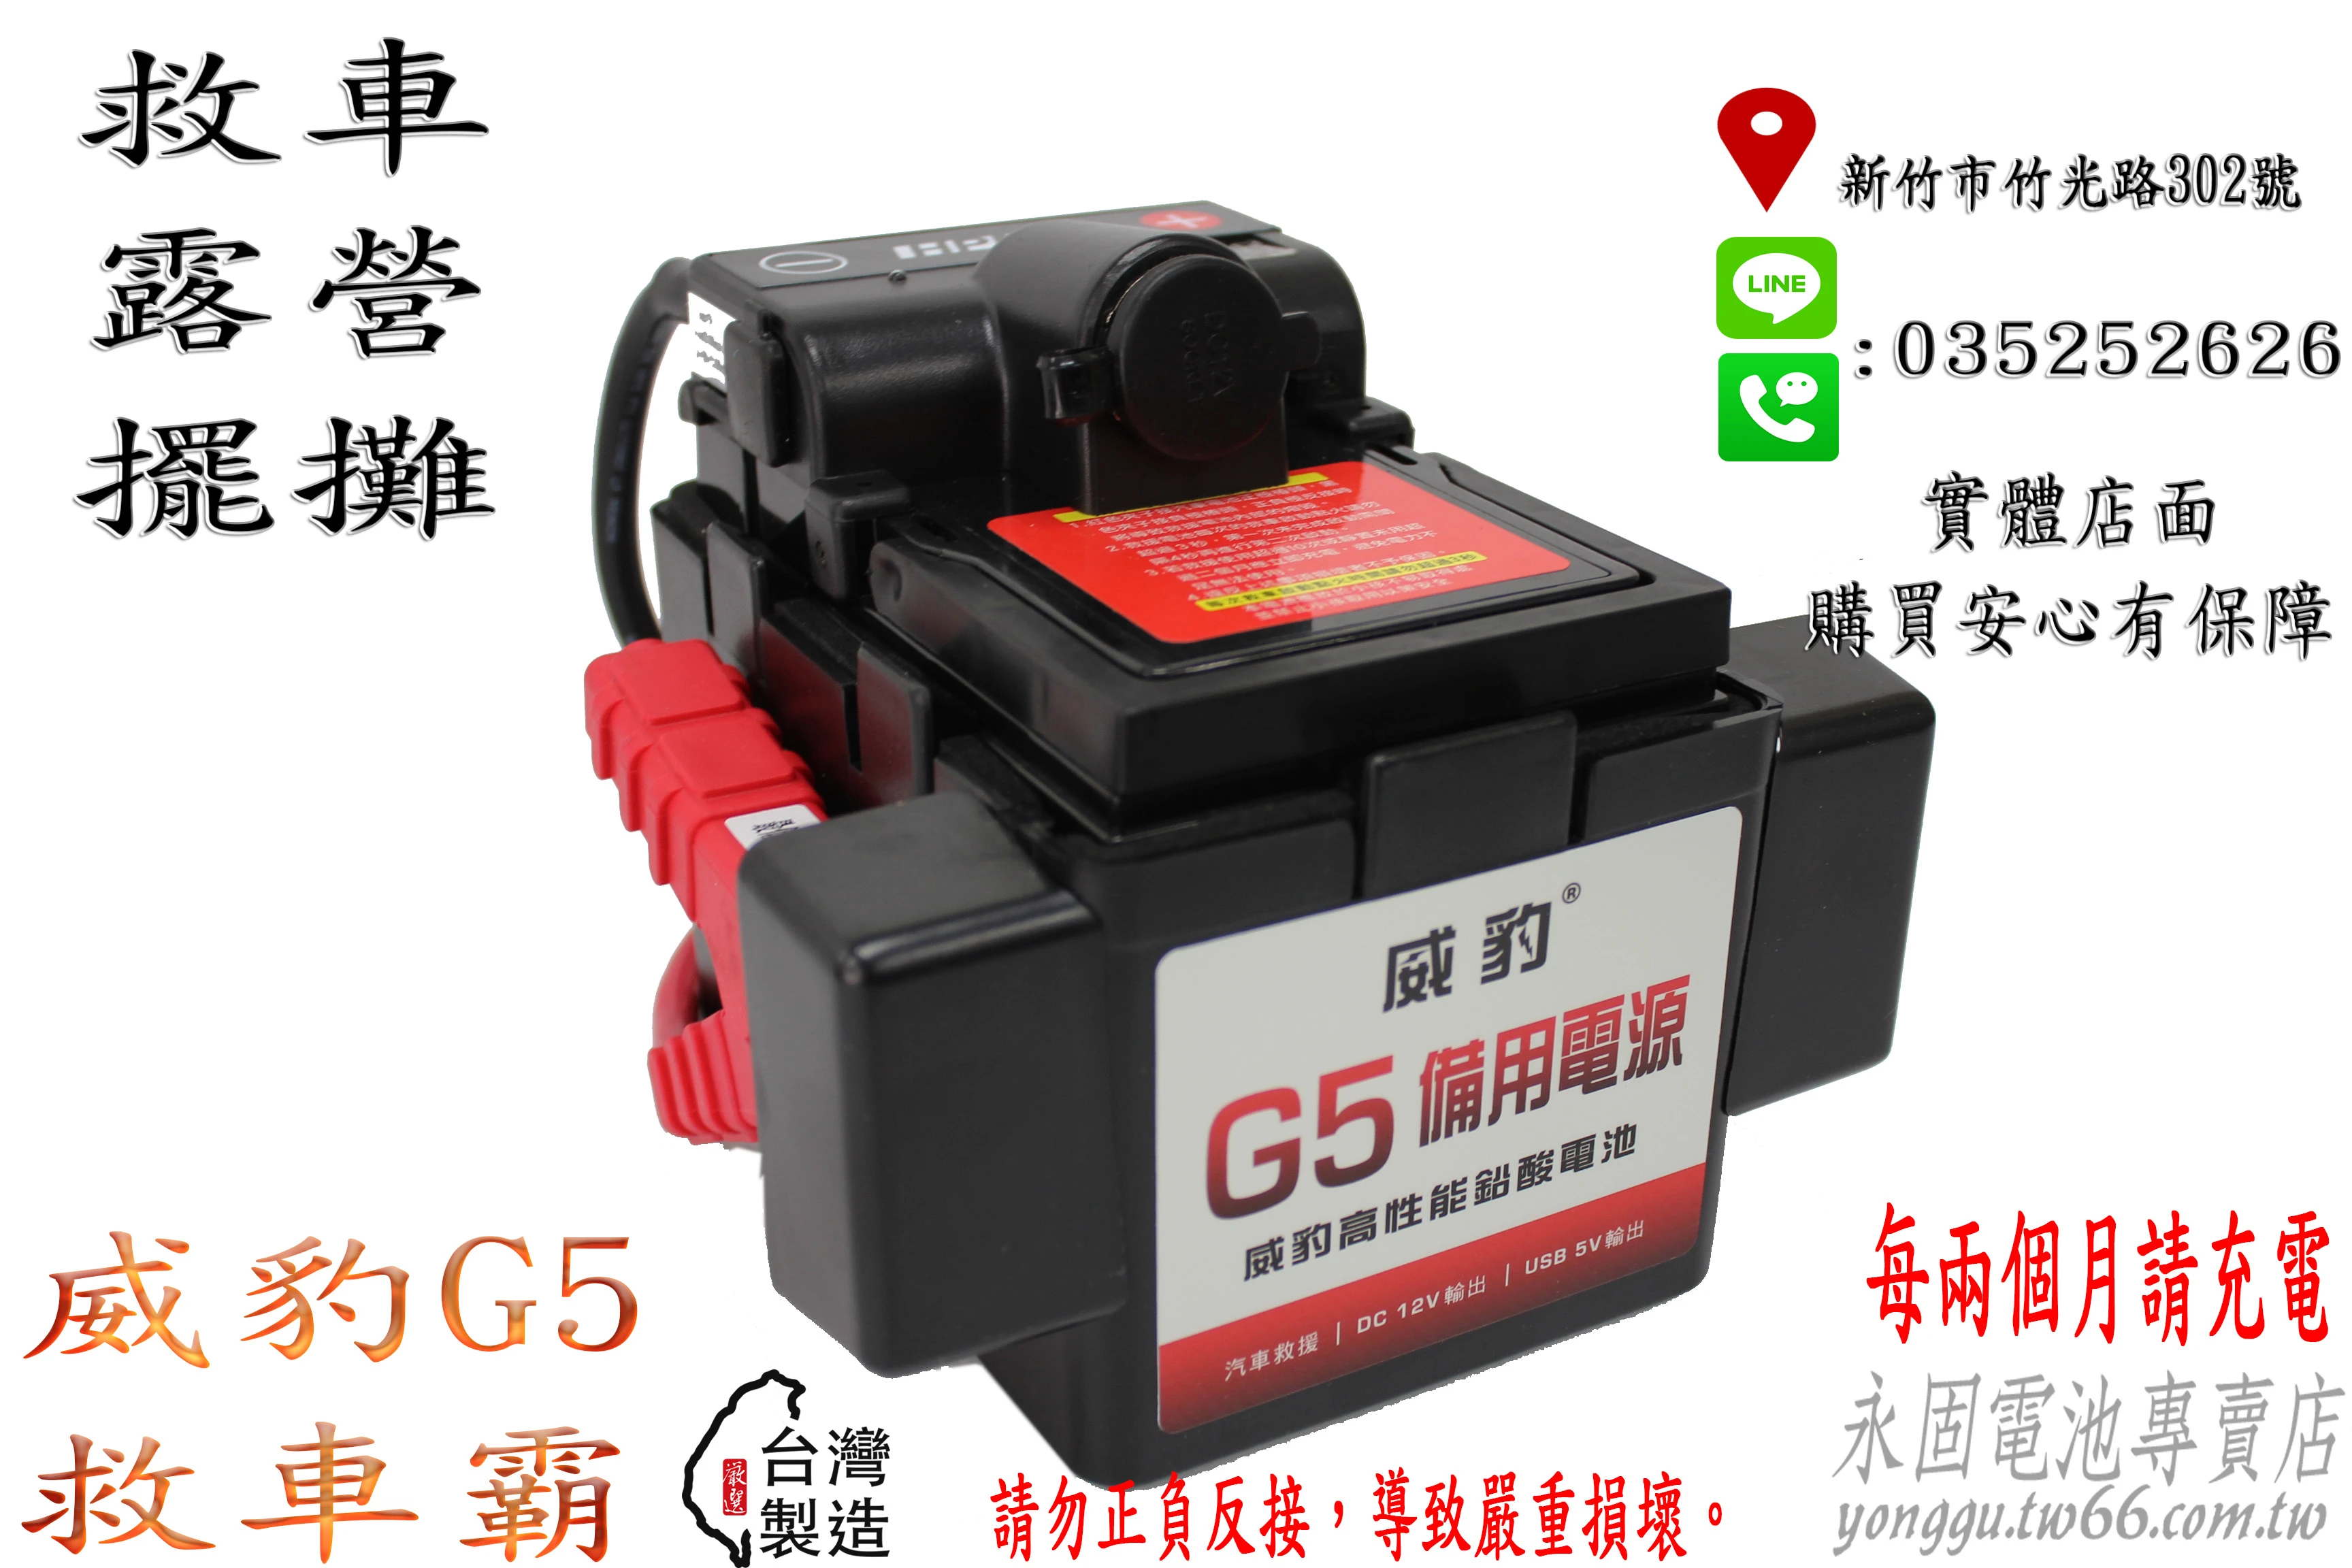 台灣製造 免運 威豹 G5 電壓表 救車 電霸 電匠 電力士 核電廠 點菸座 USB 汽車 輕易啟動 新竹永固電池專賣店